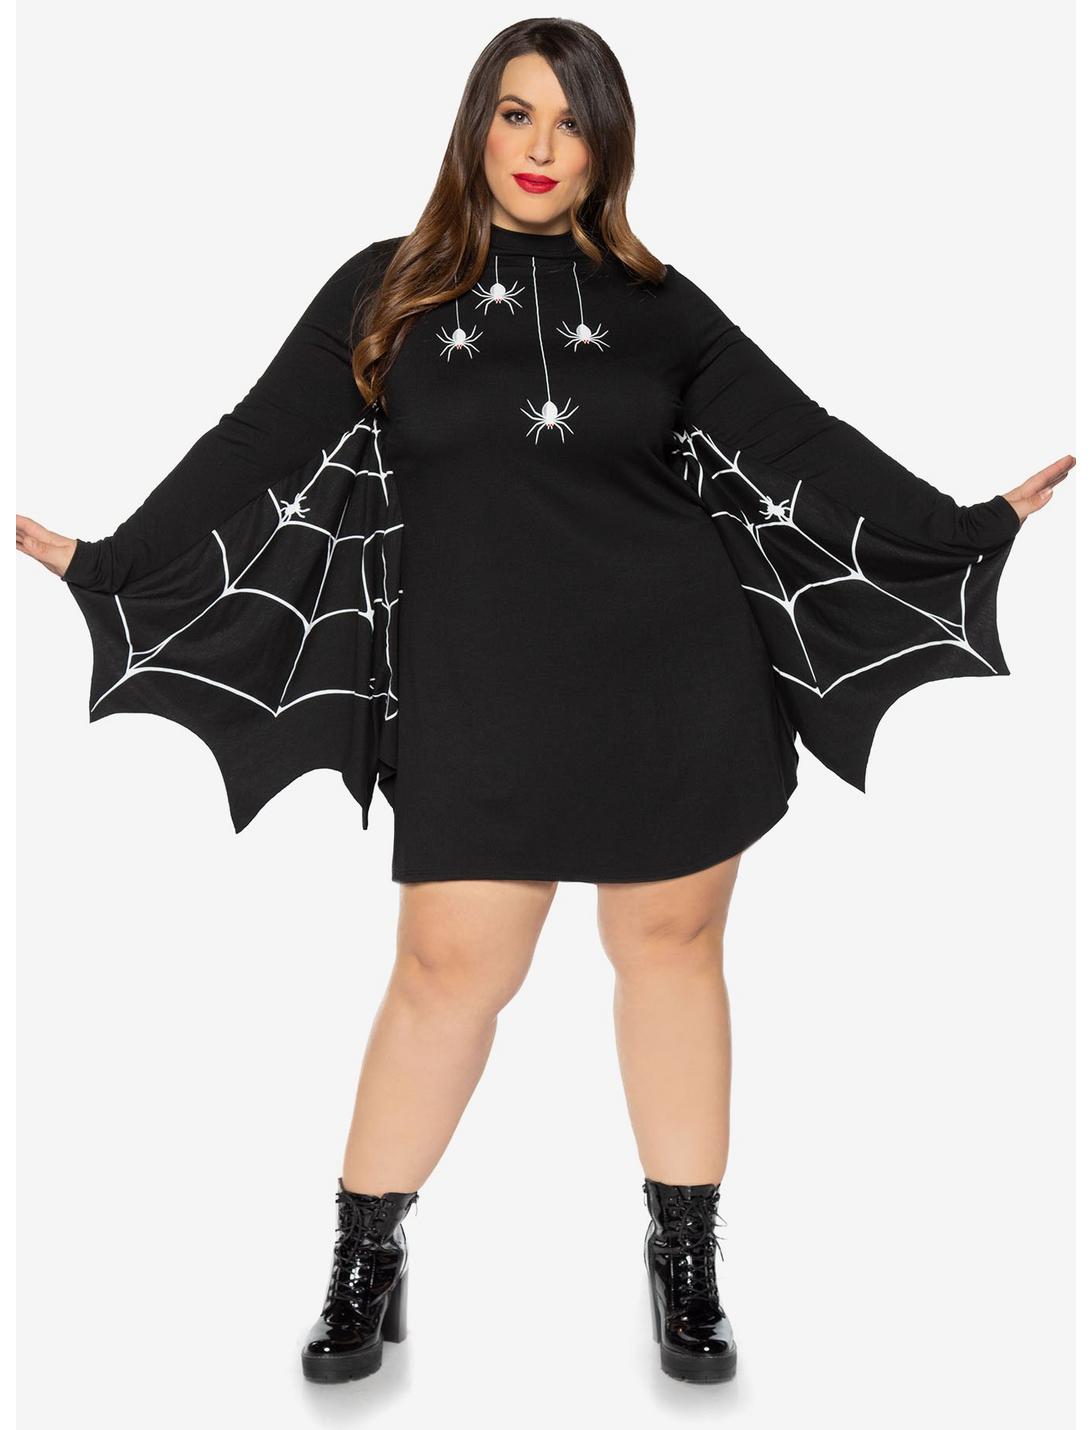 Spiderweb Winged Dress Plus Size, BLACK, hi-res